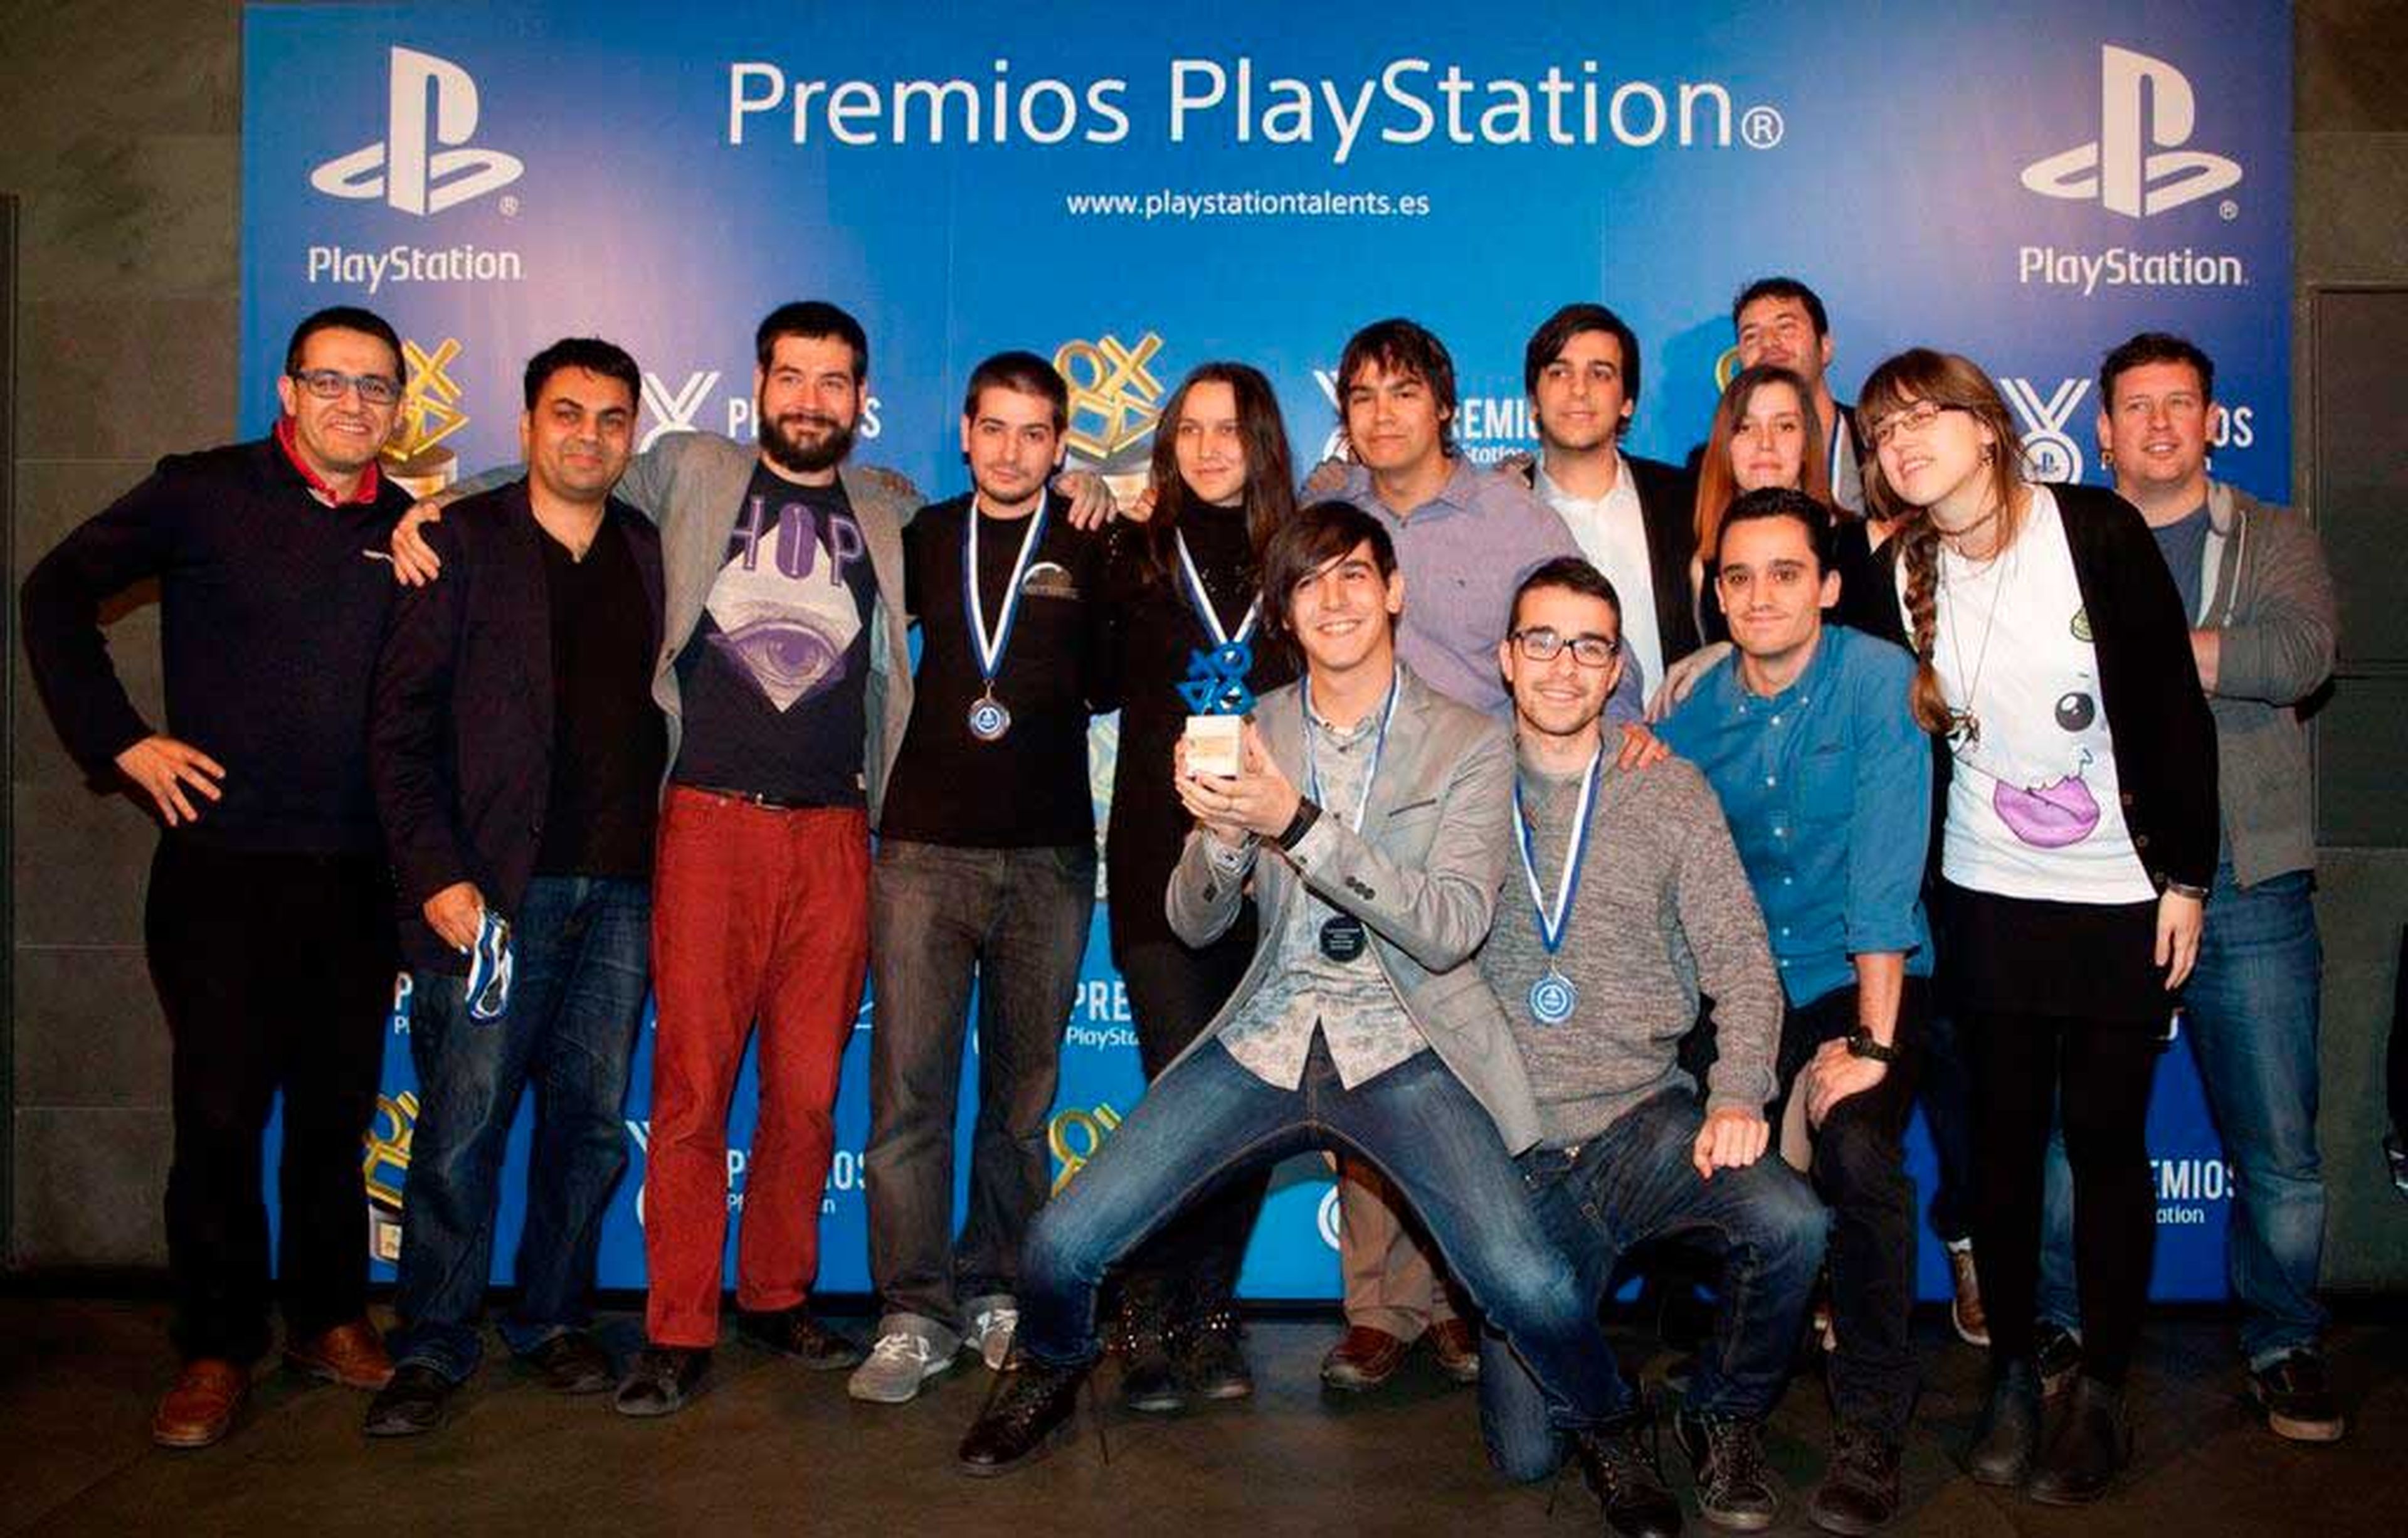 Mikel, rodilla en tierra, junto a sus compañeros de Moon Factory el día en el que recibieron el galardón al Juego Más Innovador en la 2ª Edición de los Premios PlayStation.